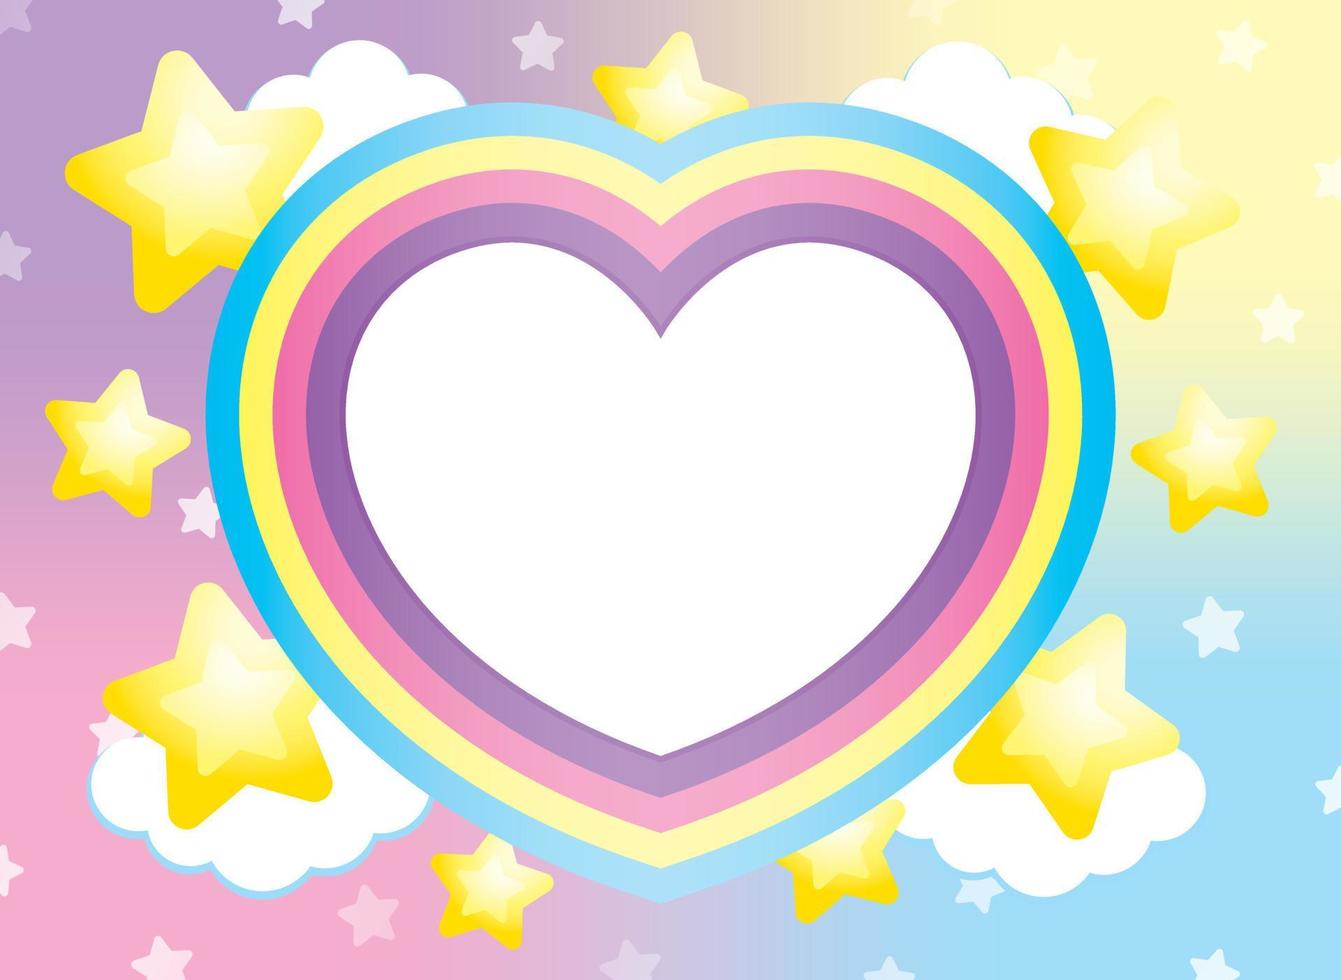 lindo marco de arco iris en forma de corazón kawaii con elemento de nube y estrellas sobre fondo degradado pastel dulce vector